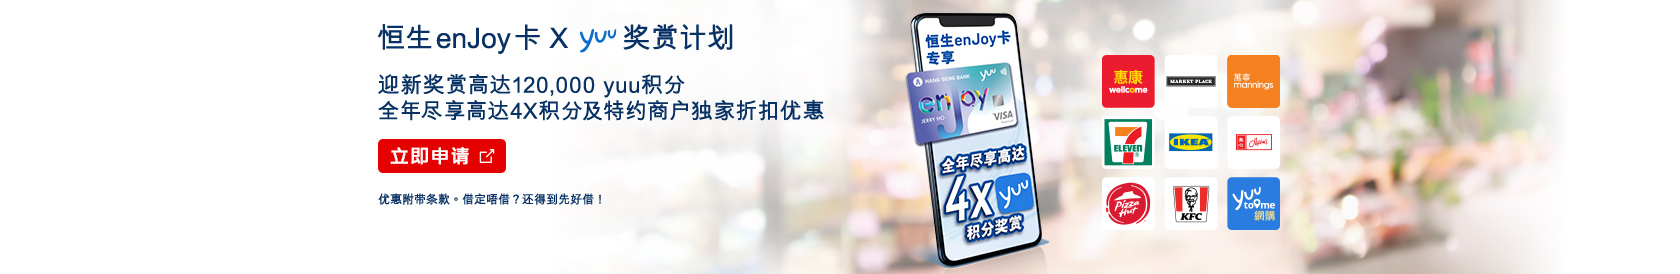 立即申请，恒生enJoy卡 x yuu奖赏计划 – 全年尽享高达4X积分，迎新奖赏HK$1,400商户电子优惠券及高达80,000积分，於新视窗开启